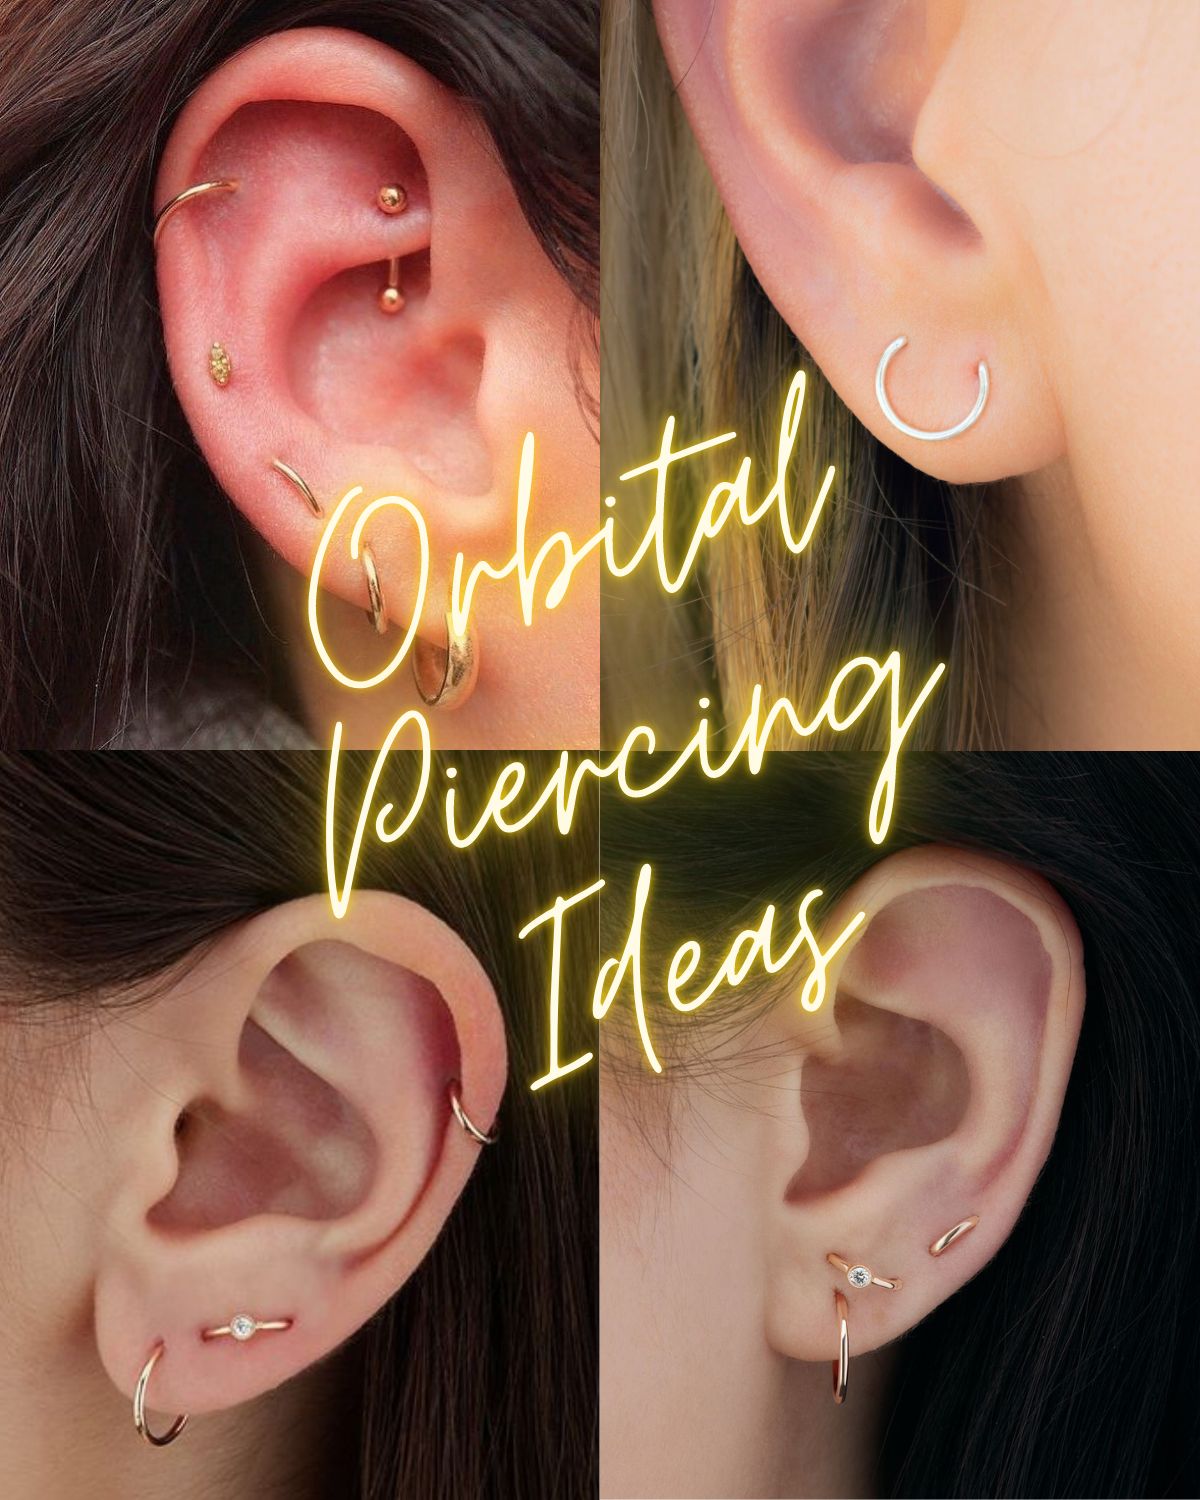 Four women's ear lobes with Orbital Ear Piercing